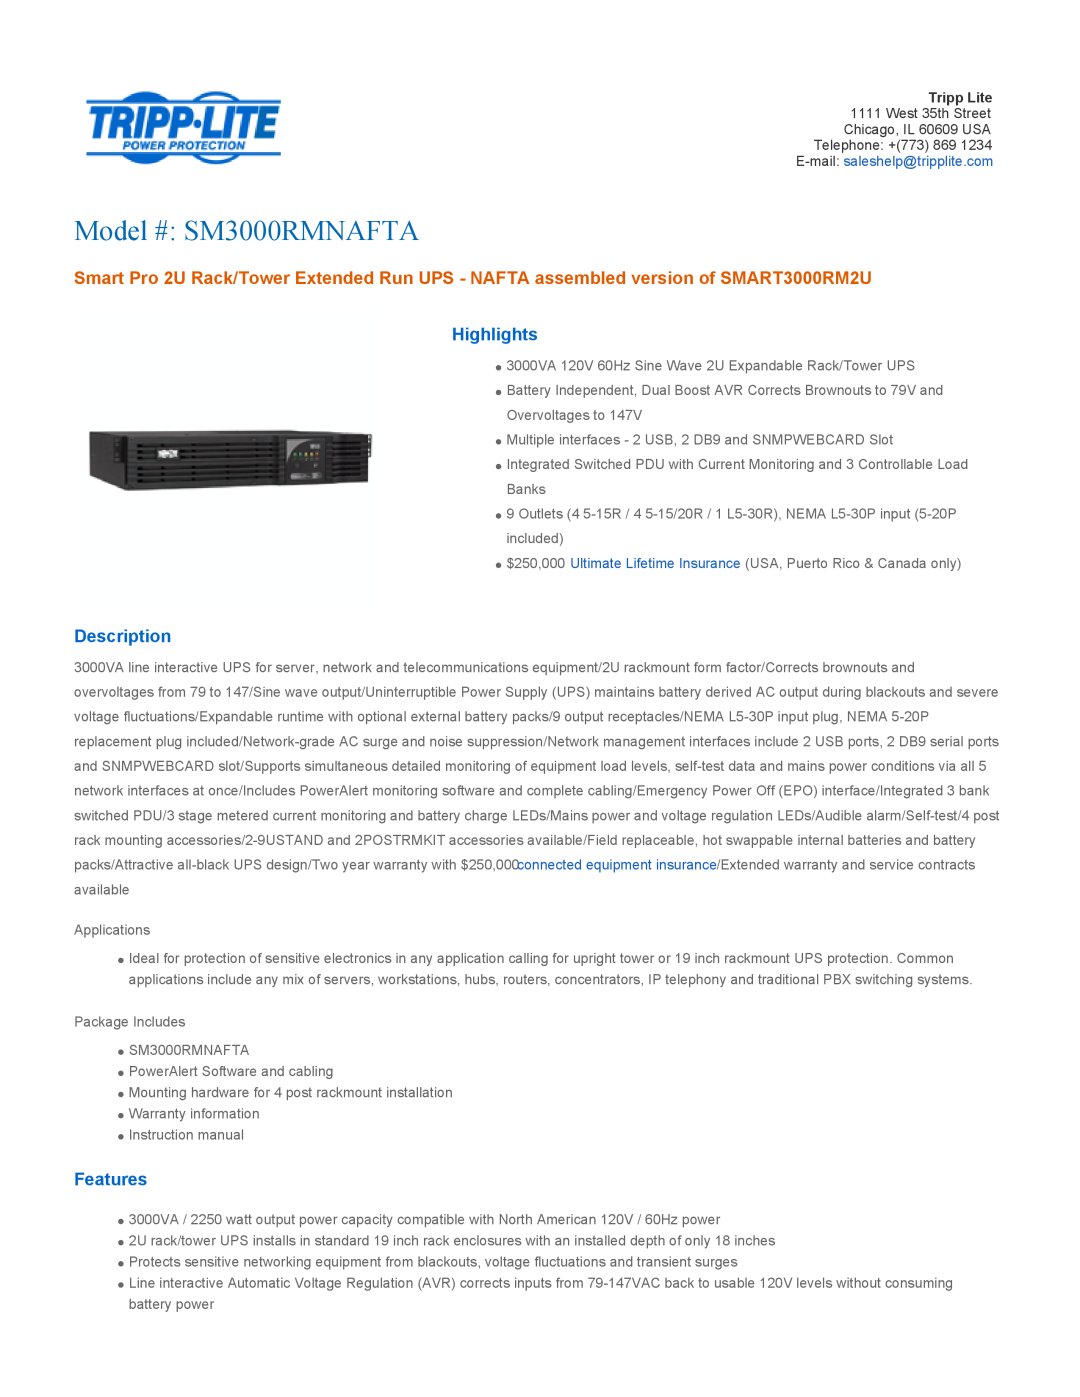 Tripp Lite warranty Highlights, Description, Features, Model # SM3000RMNAFTA 